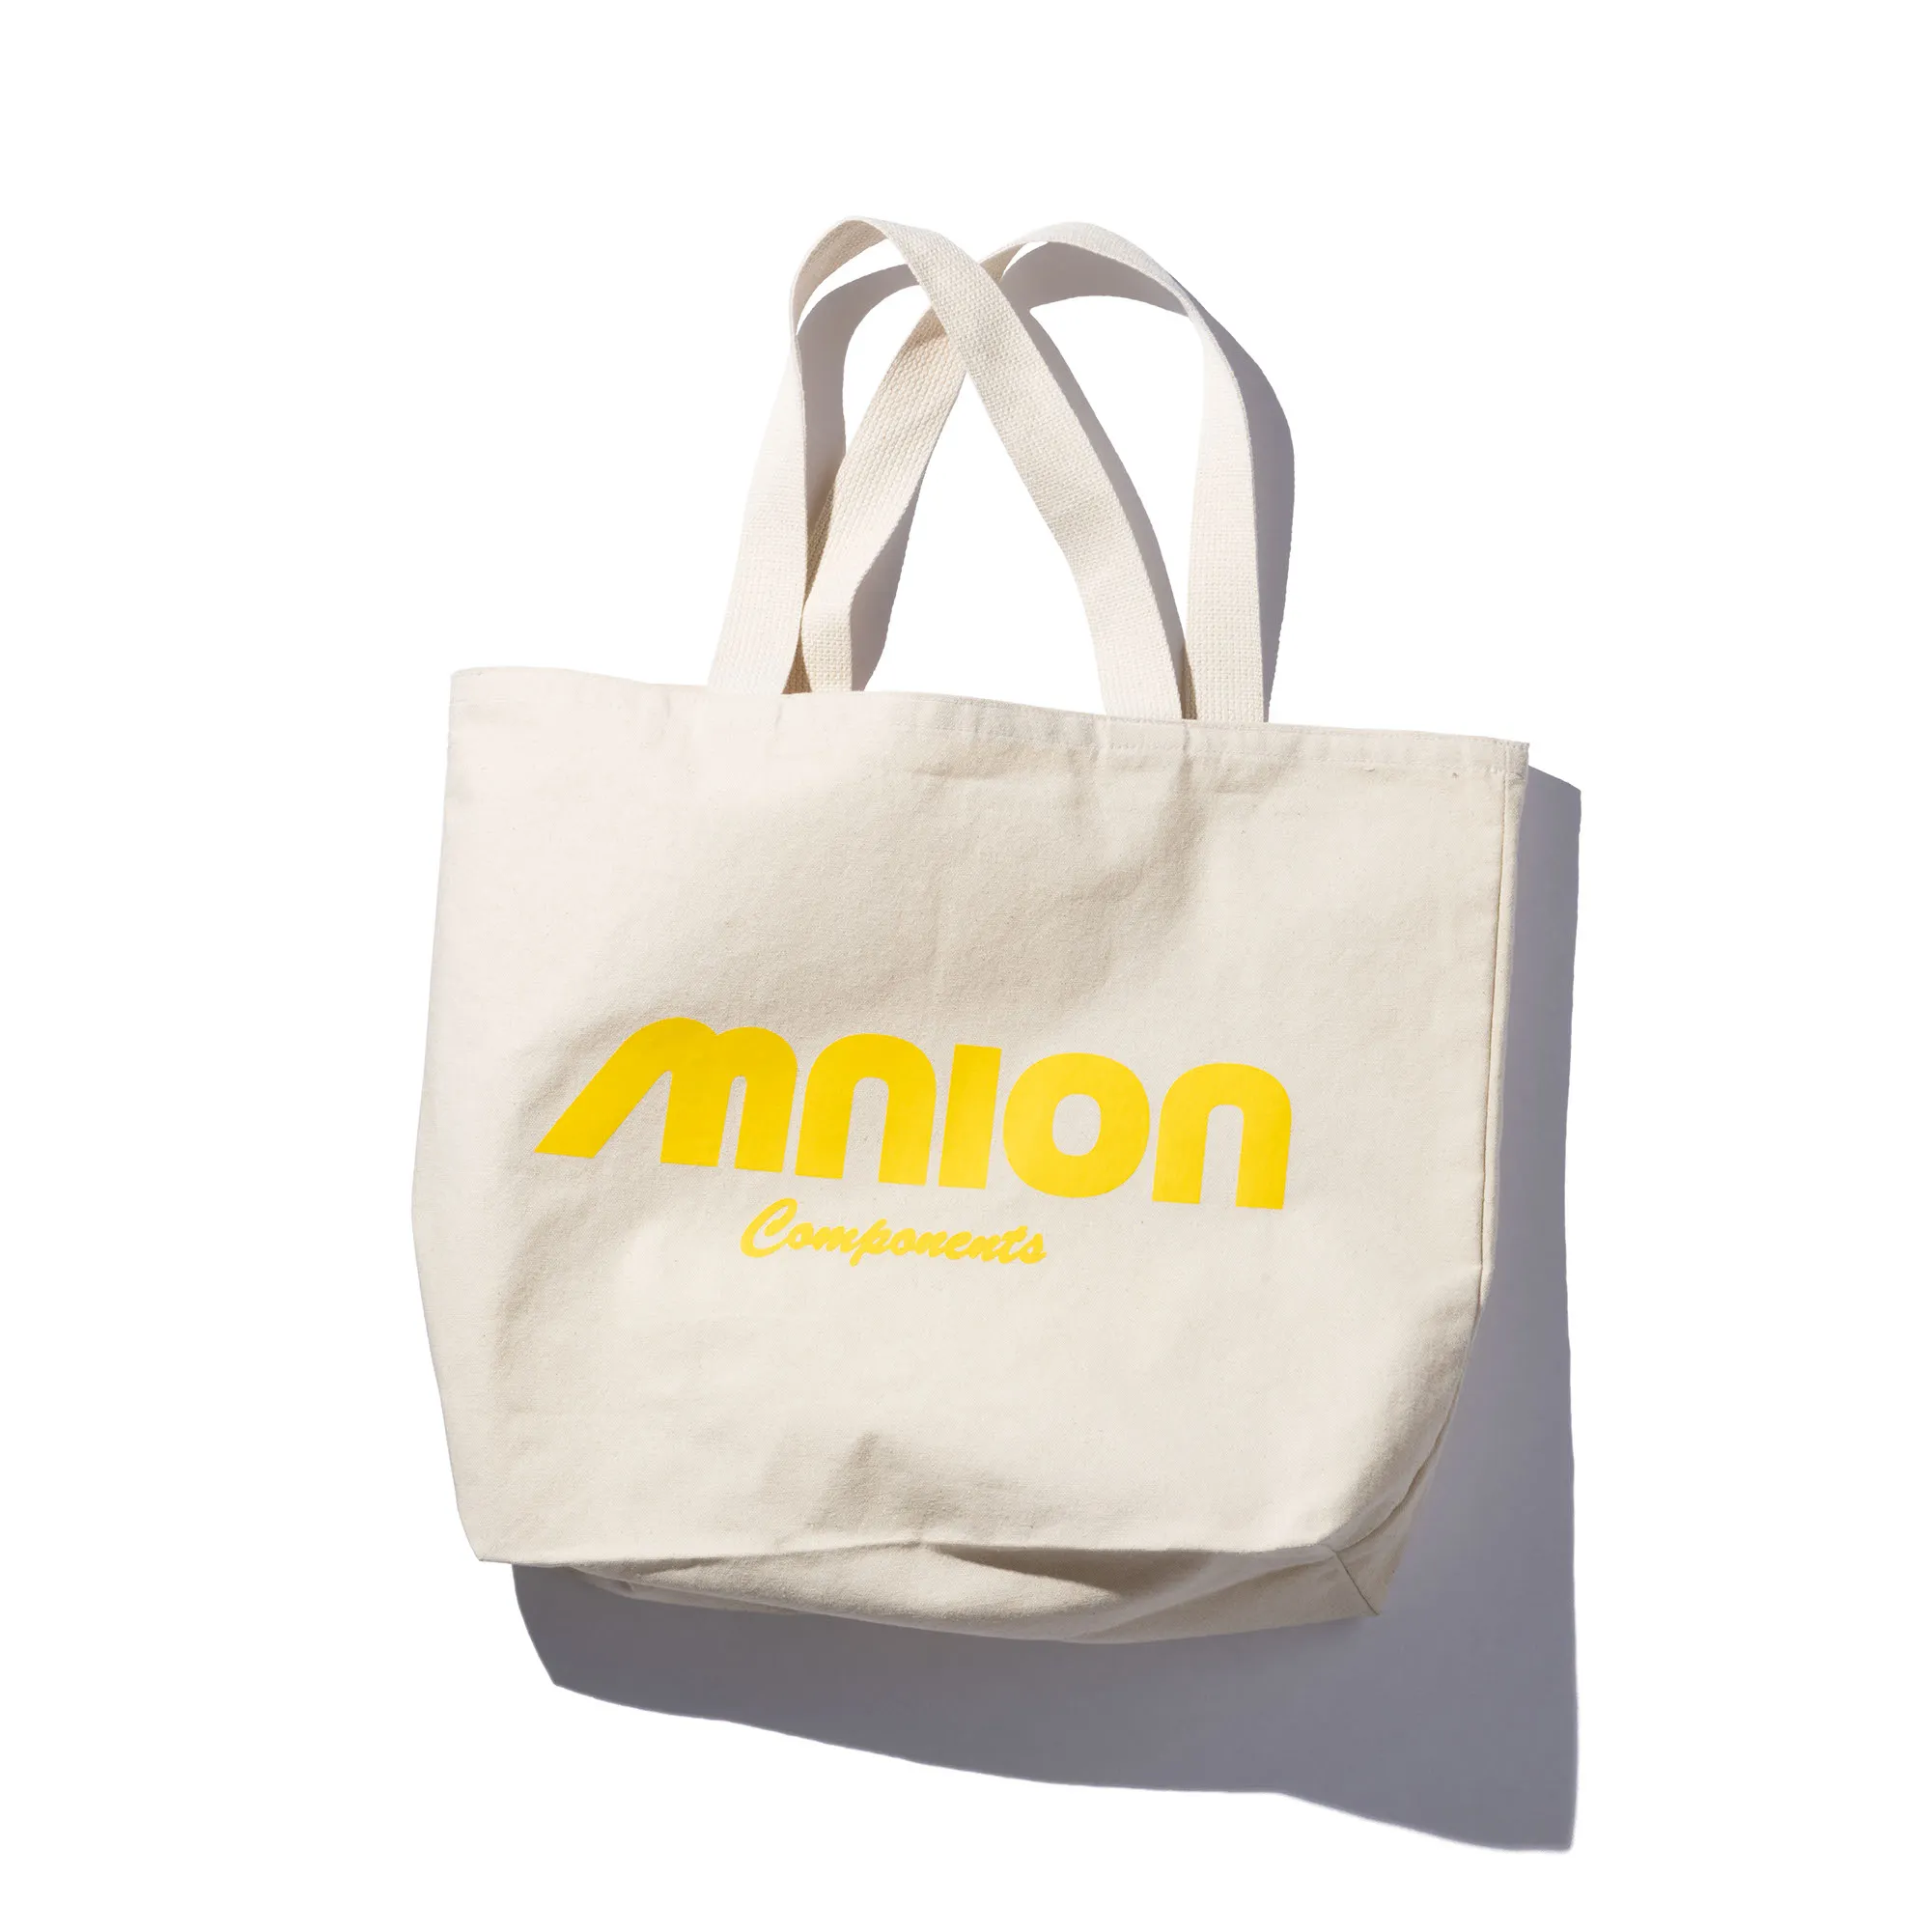 【4/14、4/21 発売】UNION TOKYOにて“MNION BIKE SHOP” BY MIN-NANO GORO (ユニオン ミンナノ)